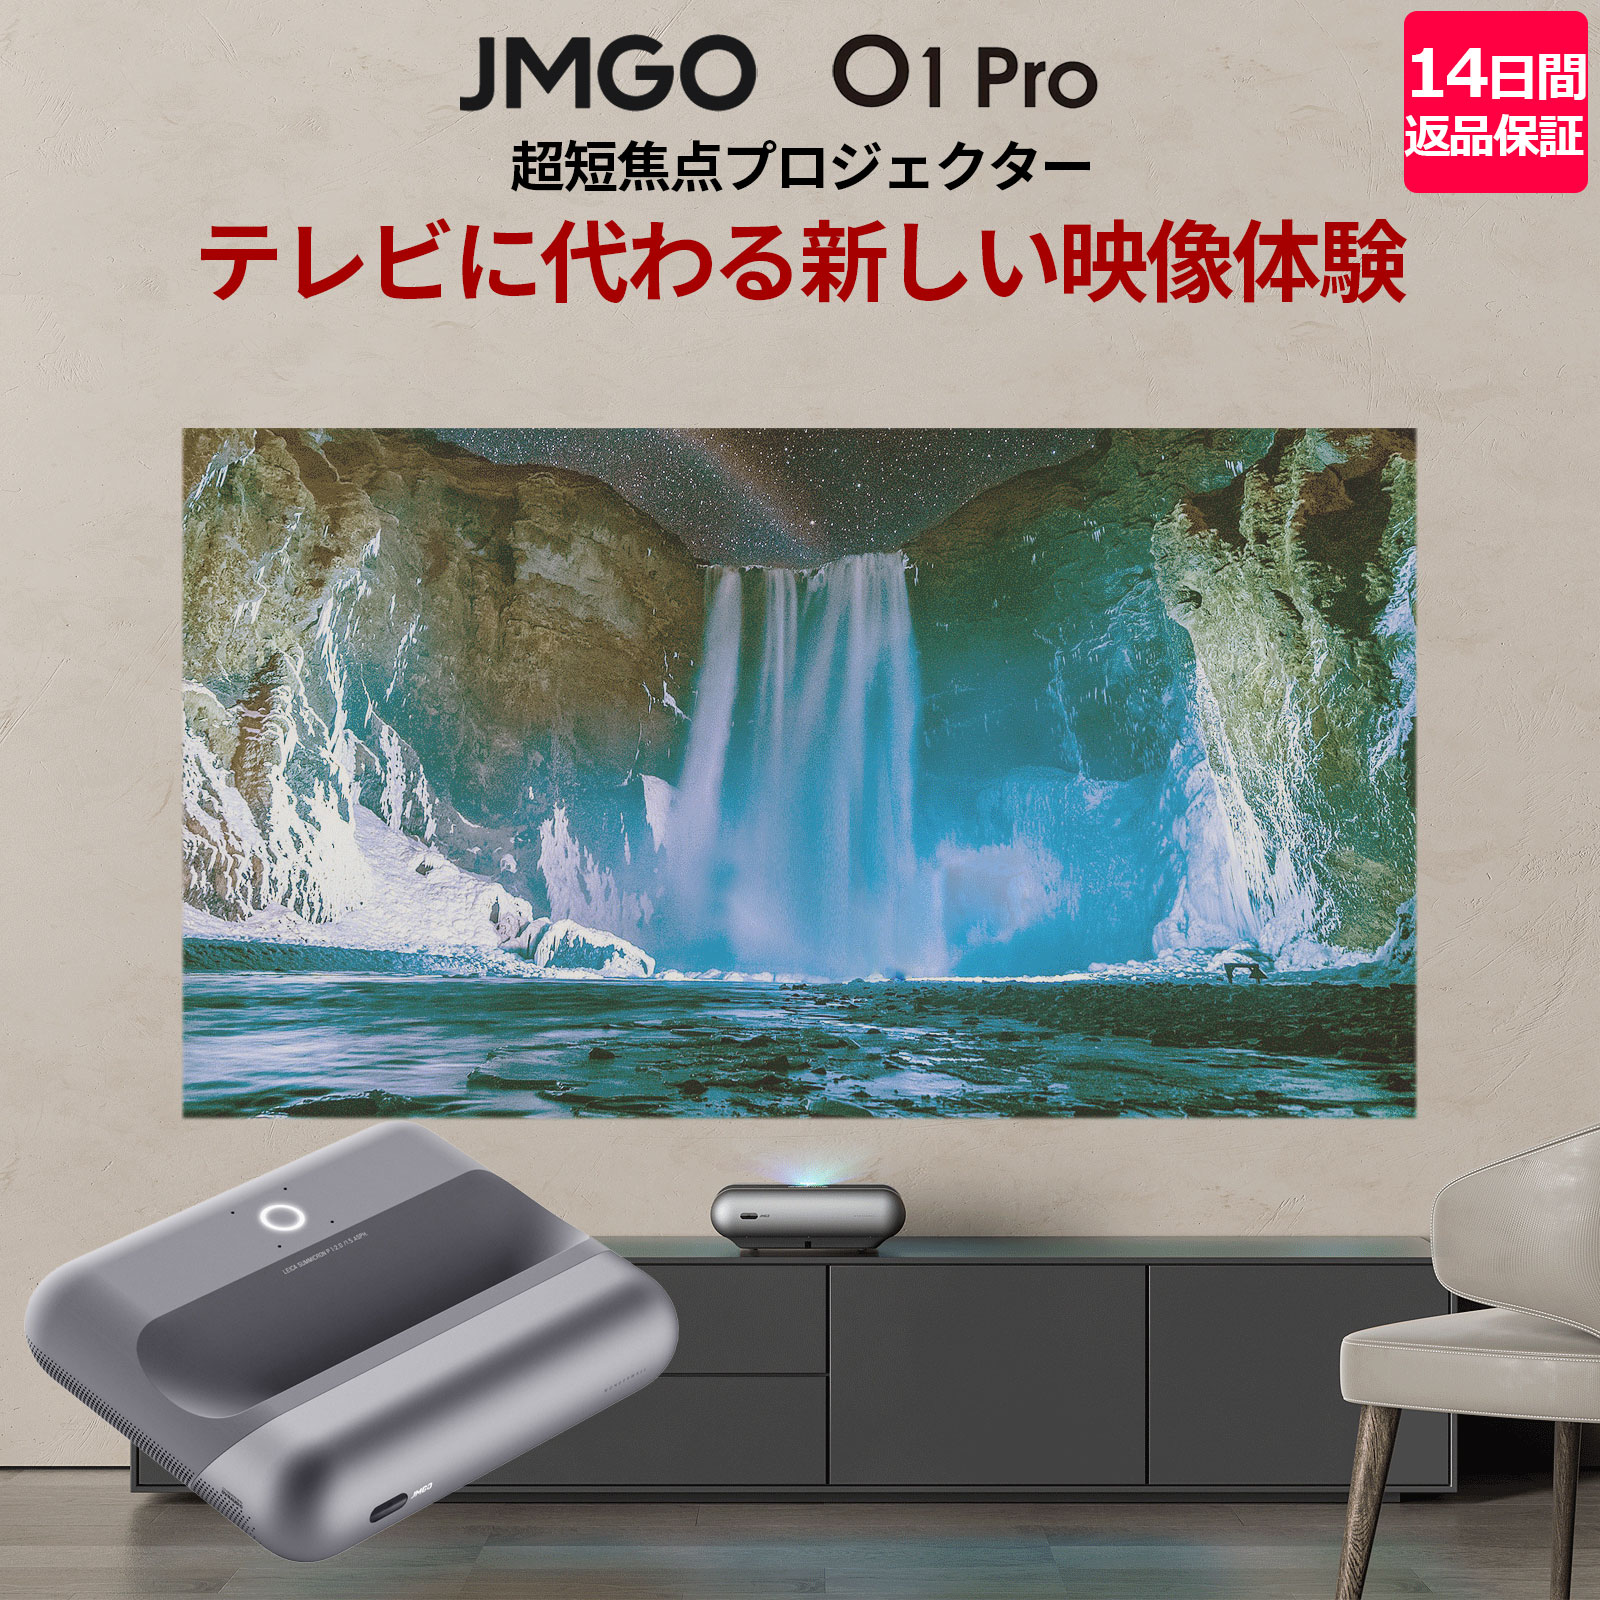 JMGO O1 Pro テレビに代わる新しい映像体験を生み出す超短焦点プロジェクター 明るさ1500ANSIルーメン DYNAUDIO 高音質 スピーカー搭載 家庭用 おしゃれなデザイン 小型 持ち運べる ジェイエムゴー 日本正規代理店